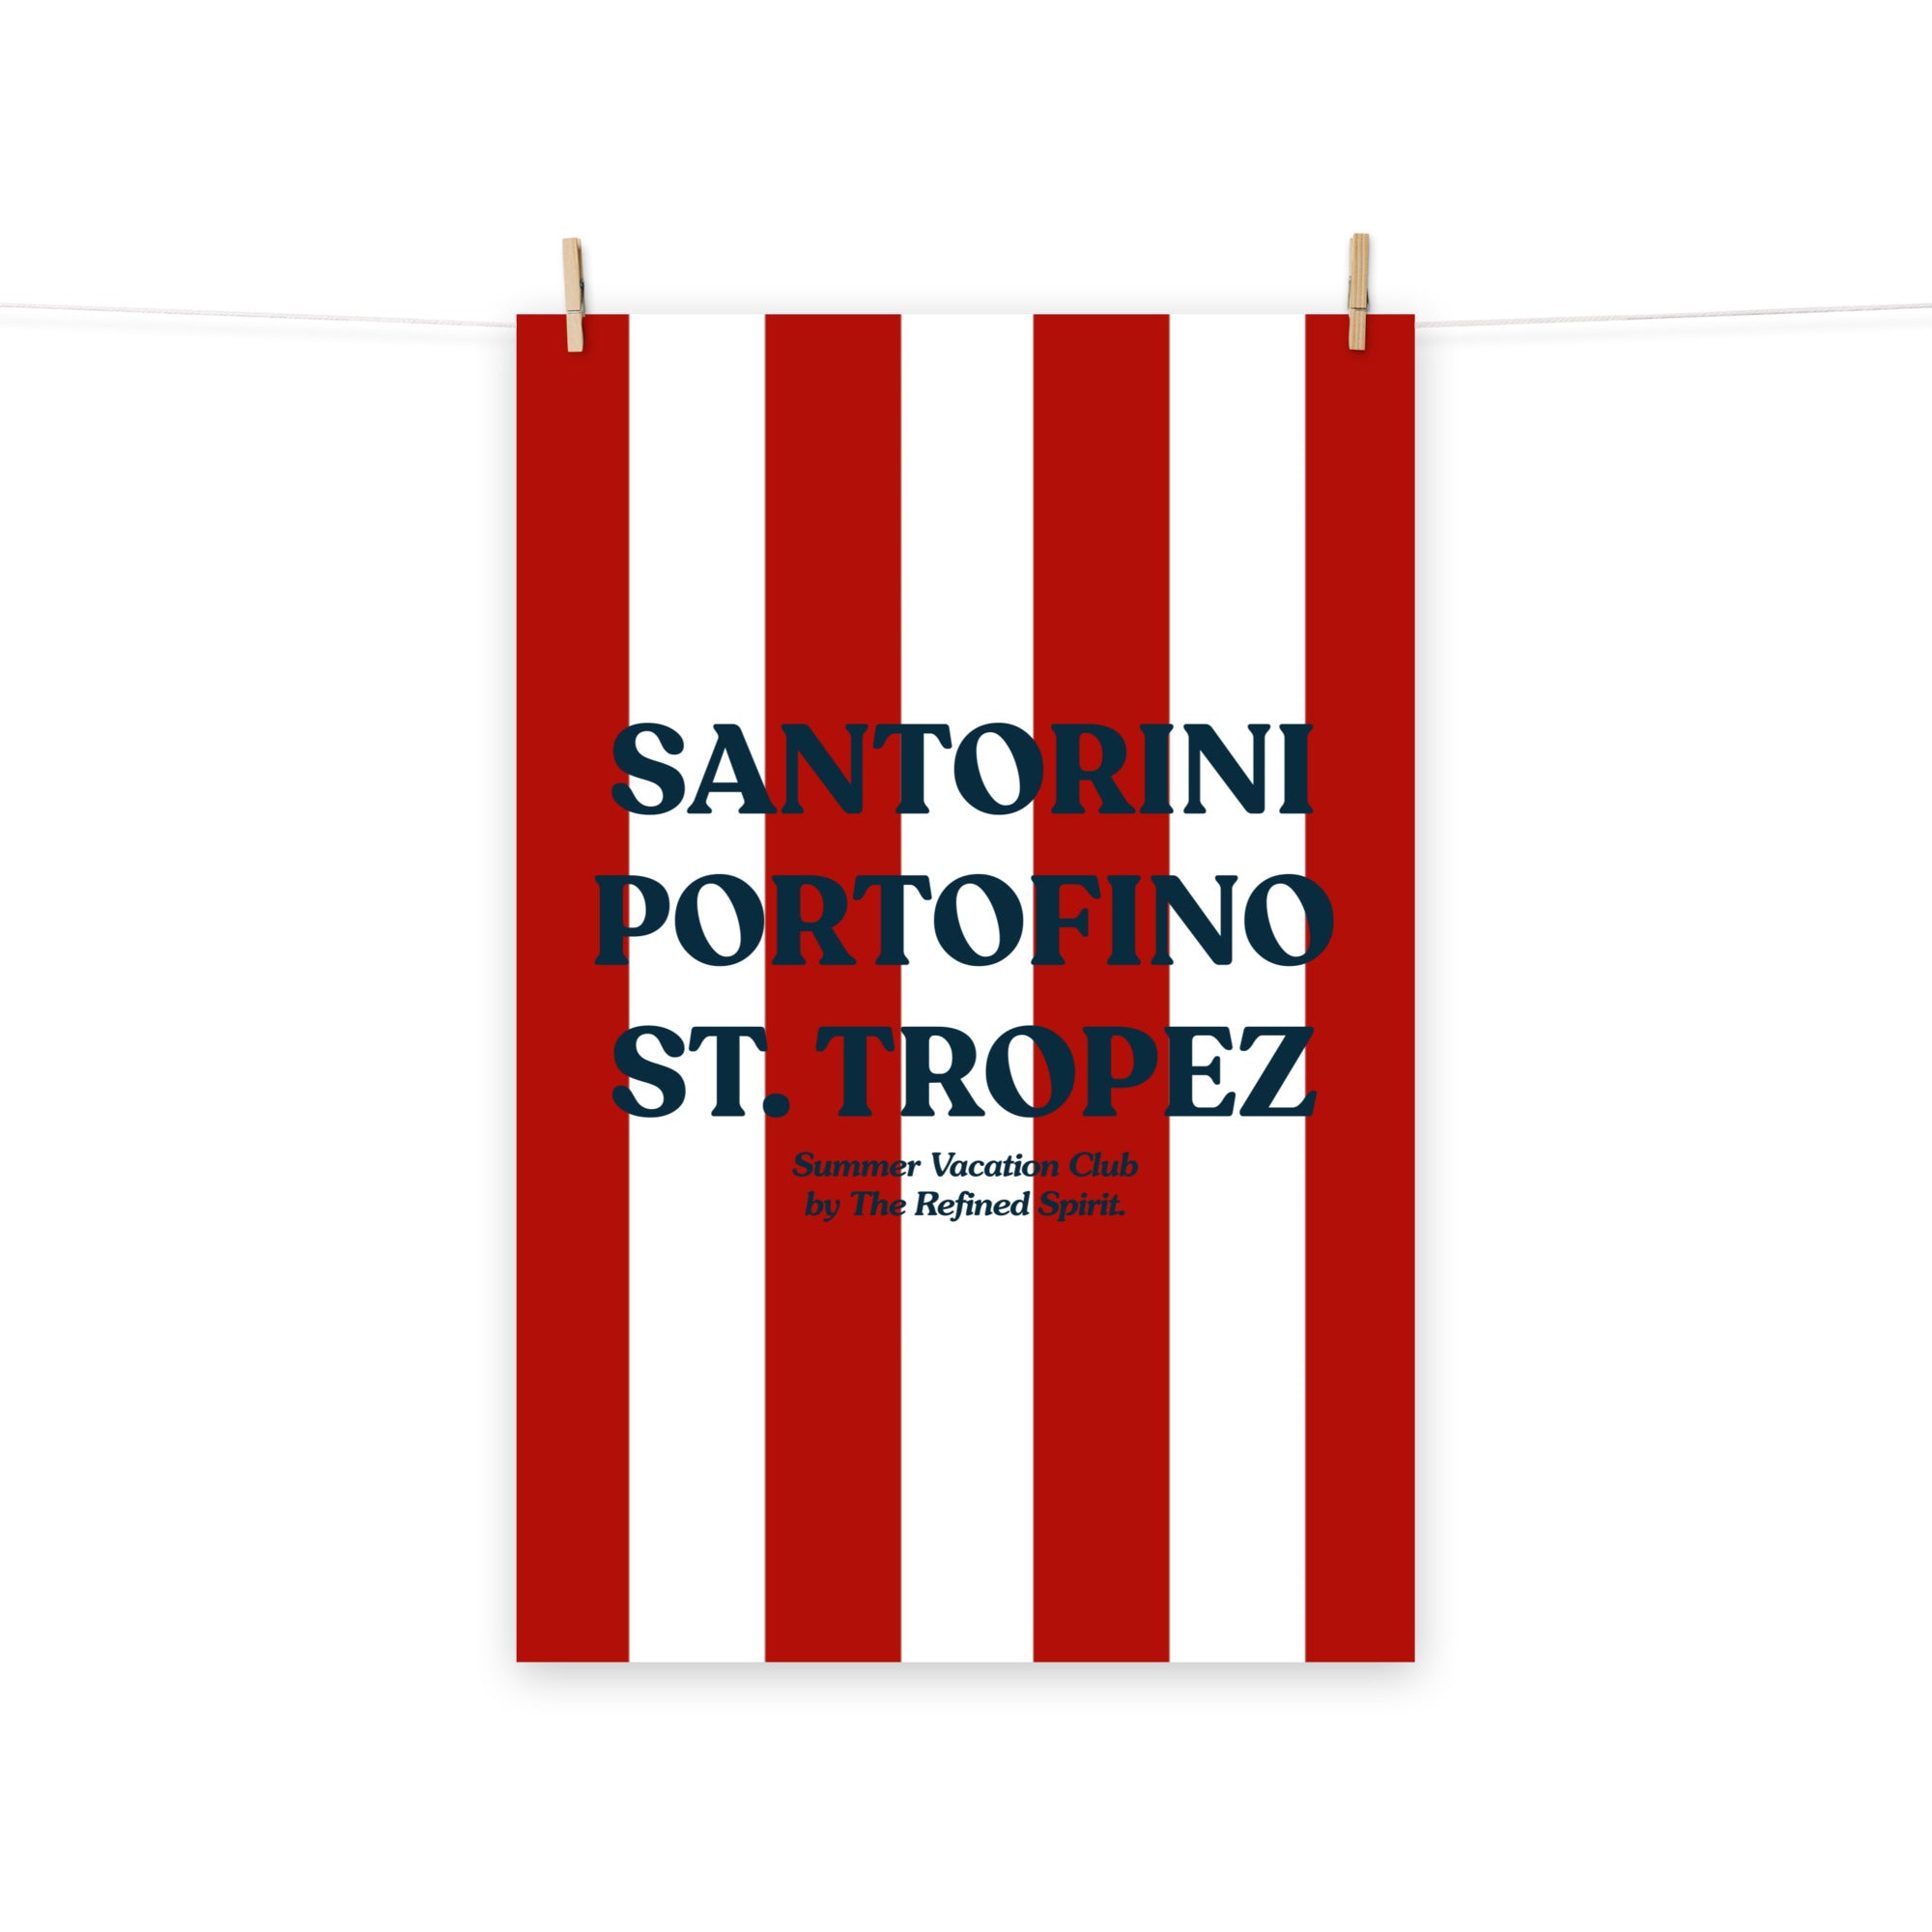 Santorini Portofino St. Tropez - Poster